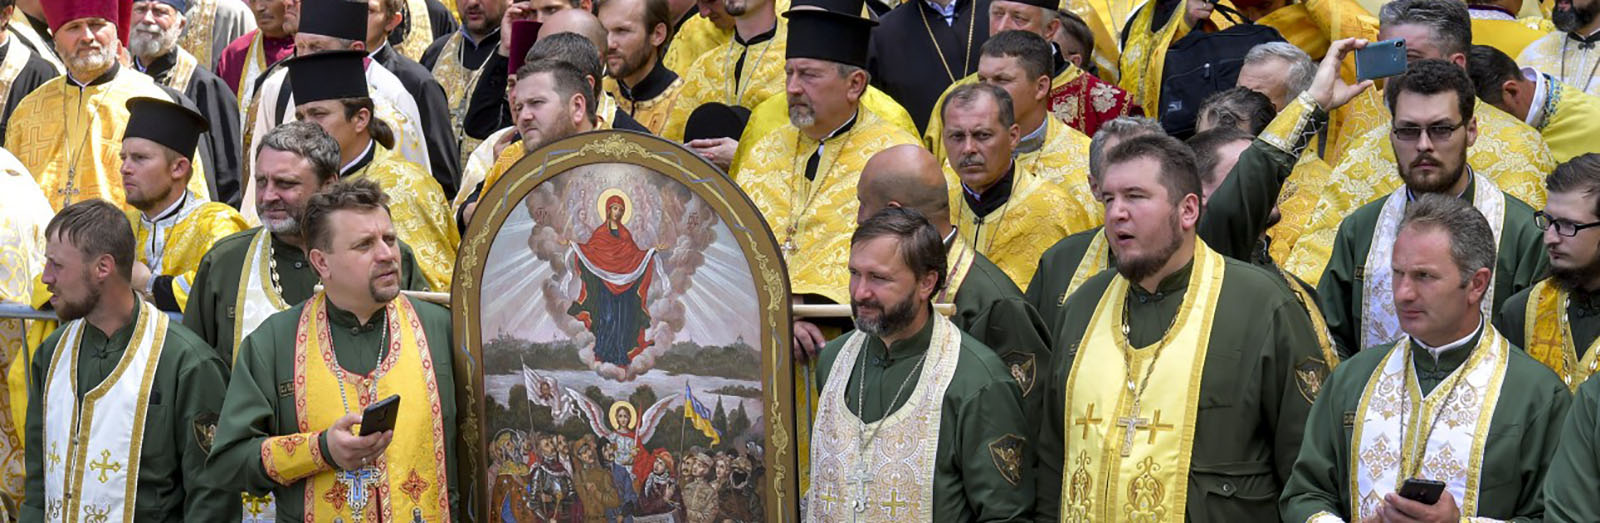 Що таке томос і чи потрібна для нього згода Російської церкви